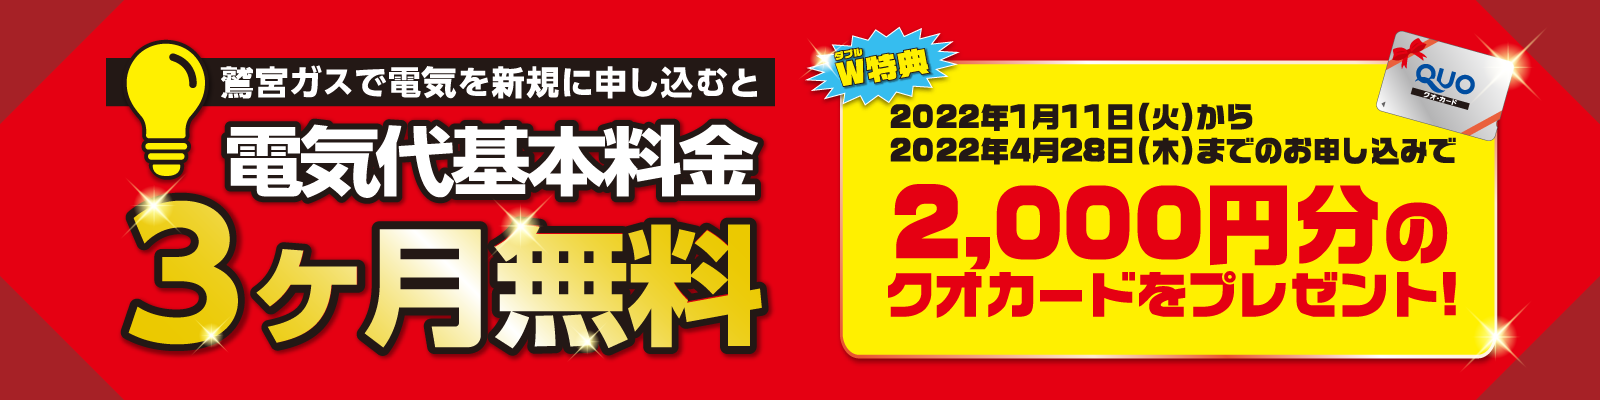 『鷲ガス電気』を新規お申し込みで、電気代基本料金3ヶ月無料 期間限定で2000円分のクオカードプレゼント！